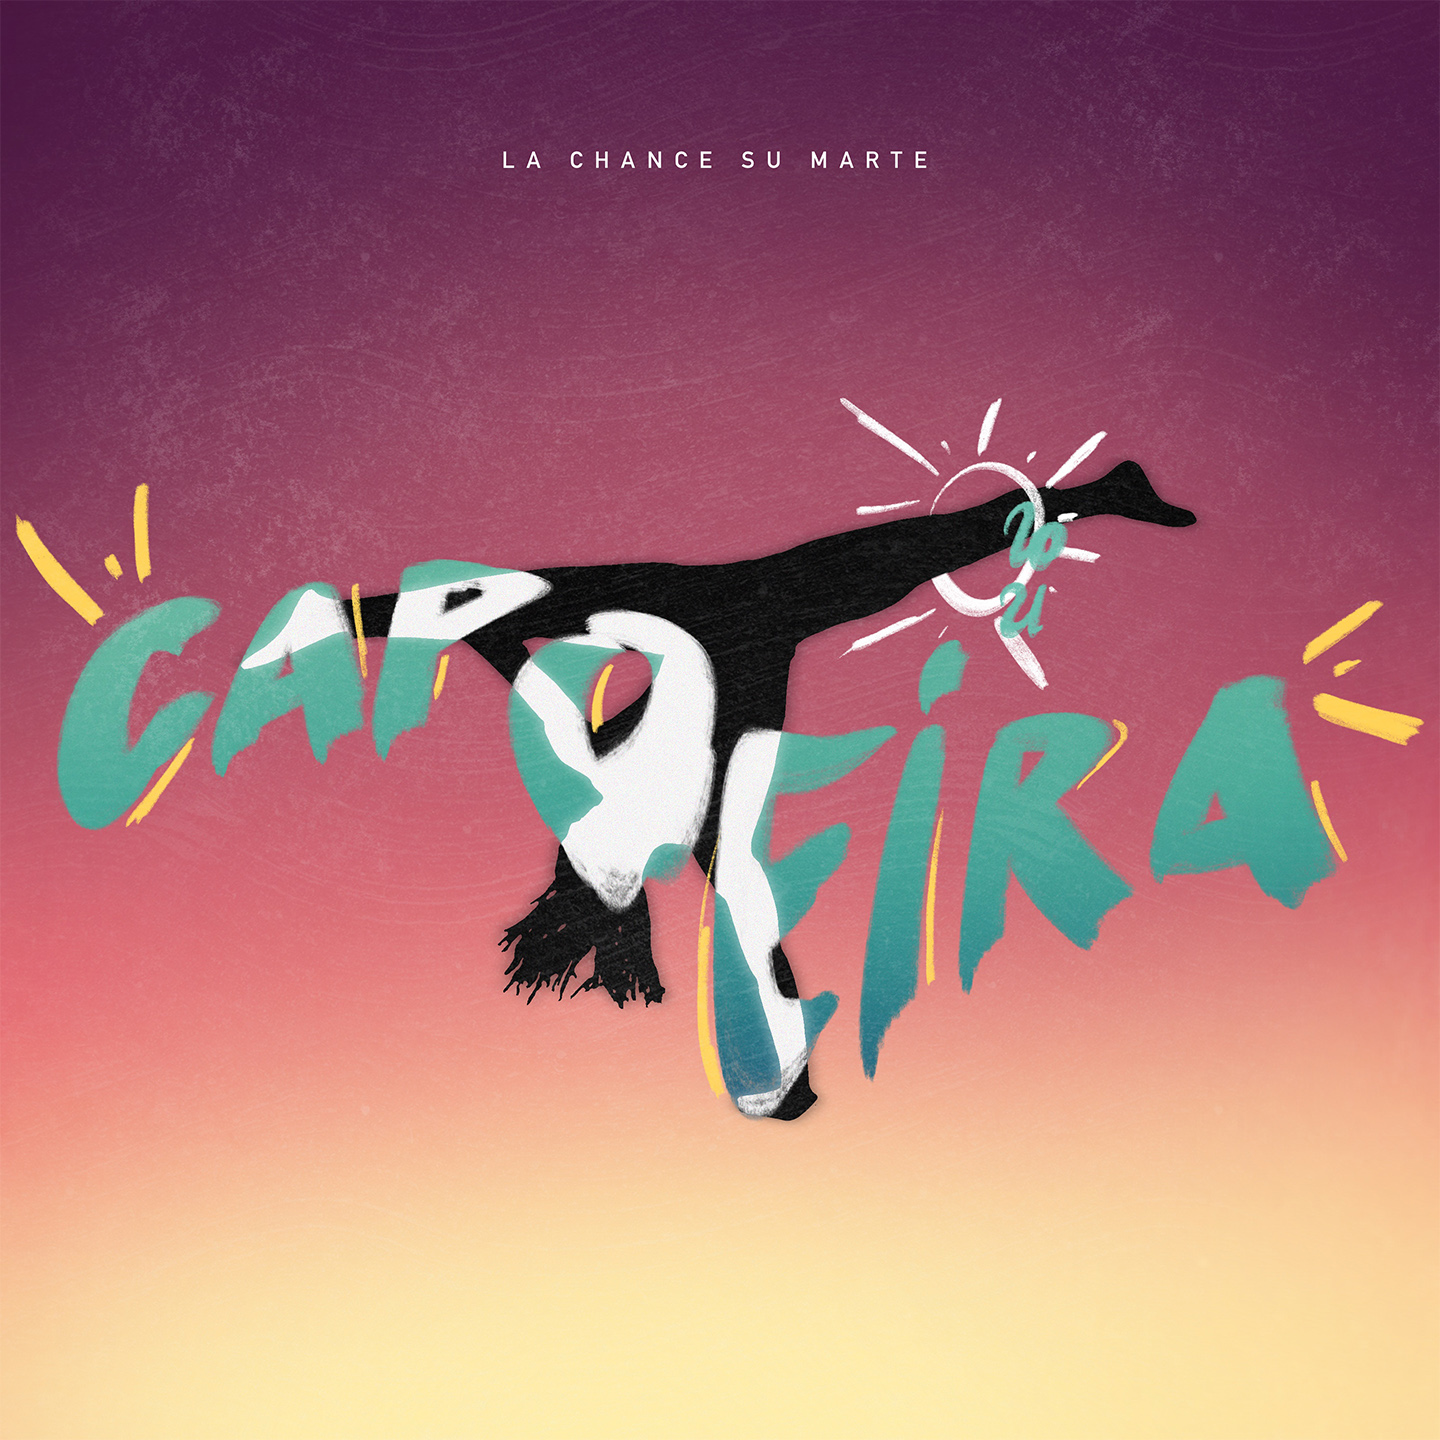 “Capoeira”, il nuovo singolo della band anconetana La Chance Su Marte